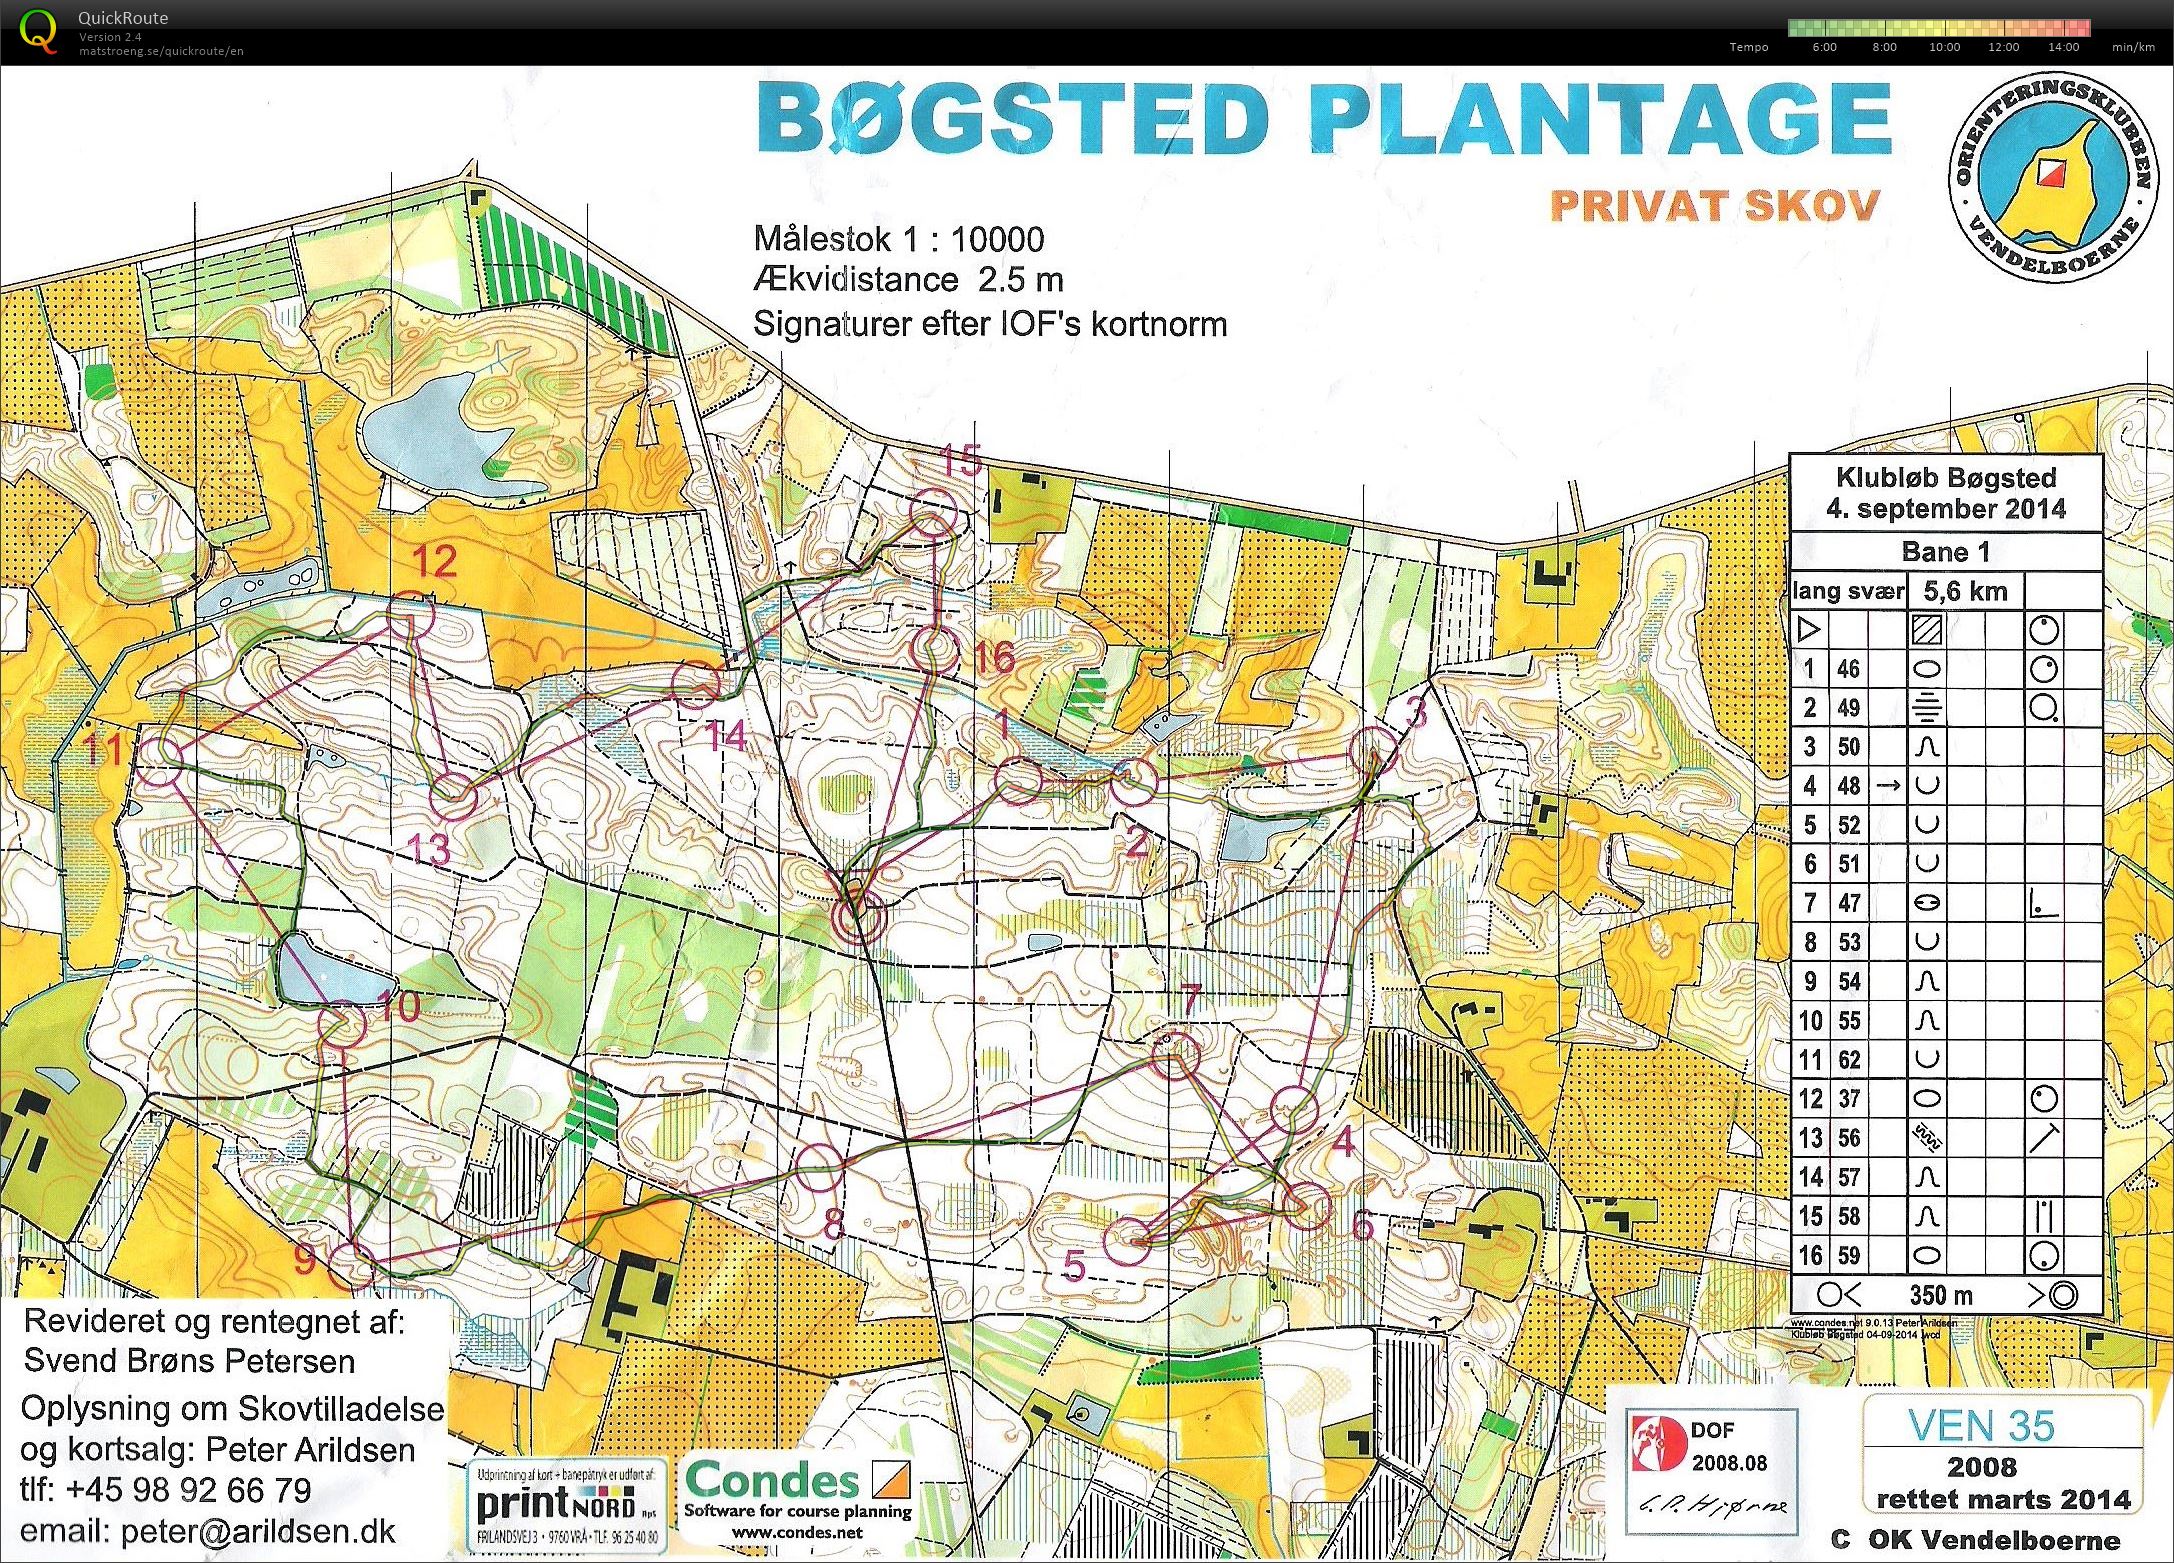 Bøgsted Plantage - Bane 1 (04-09-2014)